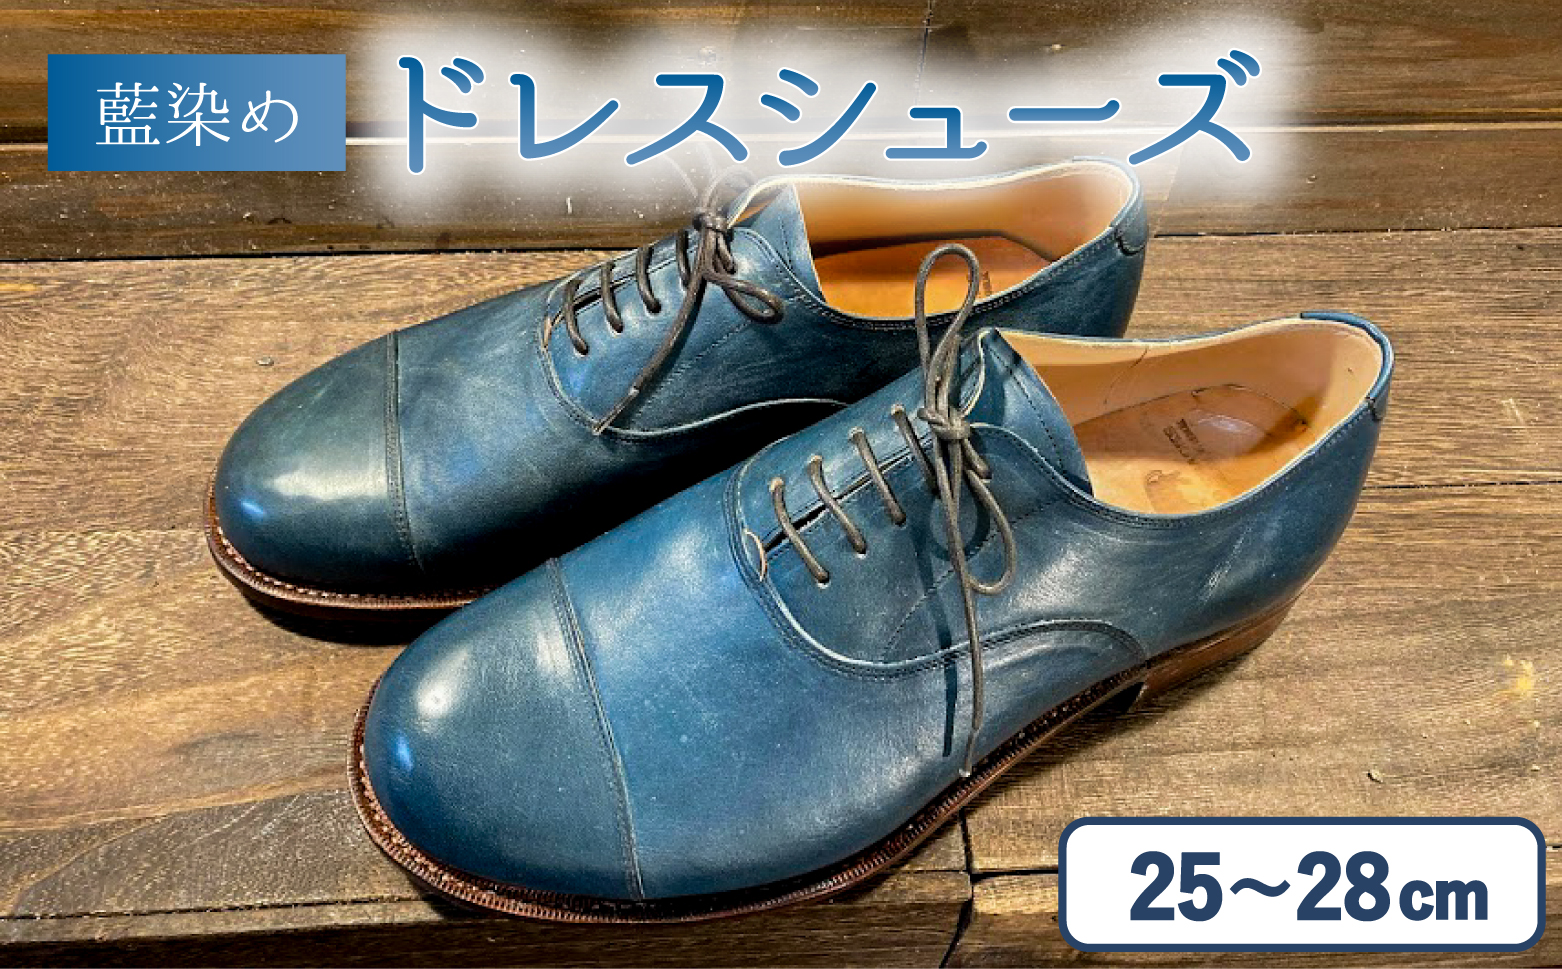 藍染 45R 革靴 日本製 23cm 馬革考えてみます失礼します